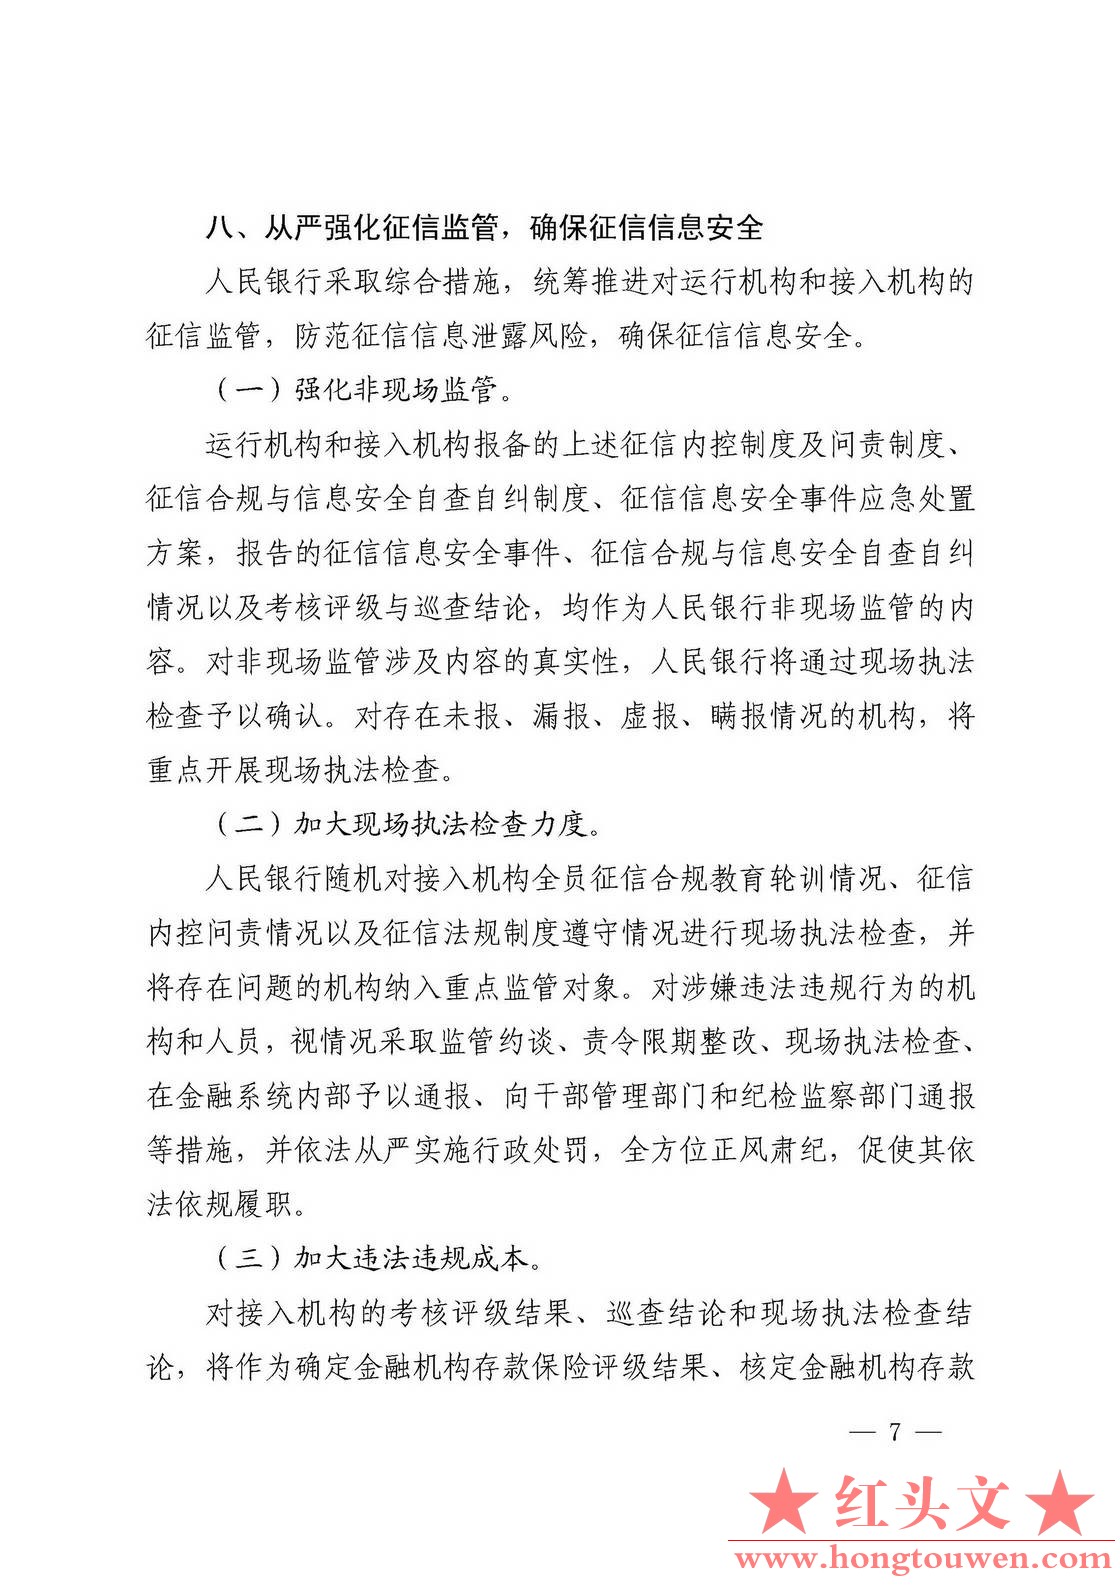 银发[2018]102号-中国人民银行关于进一步加强征信信息安全管理的通知_页面_07.jpg.jpg